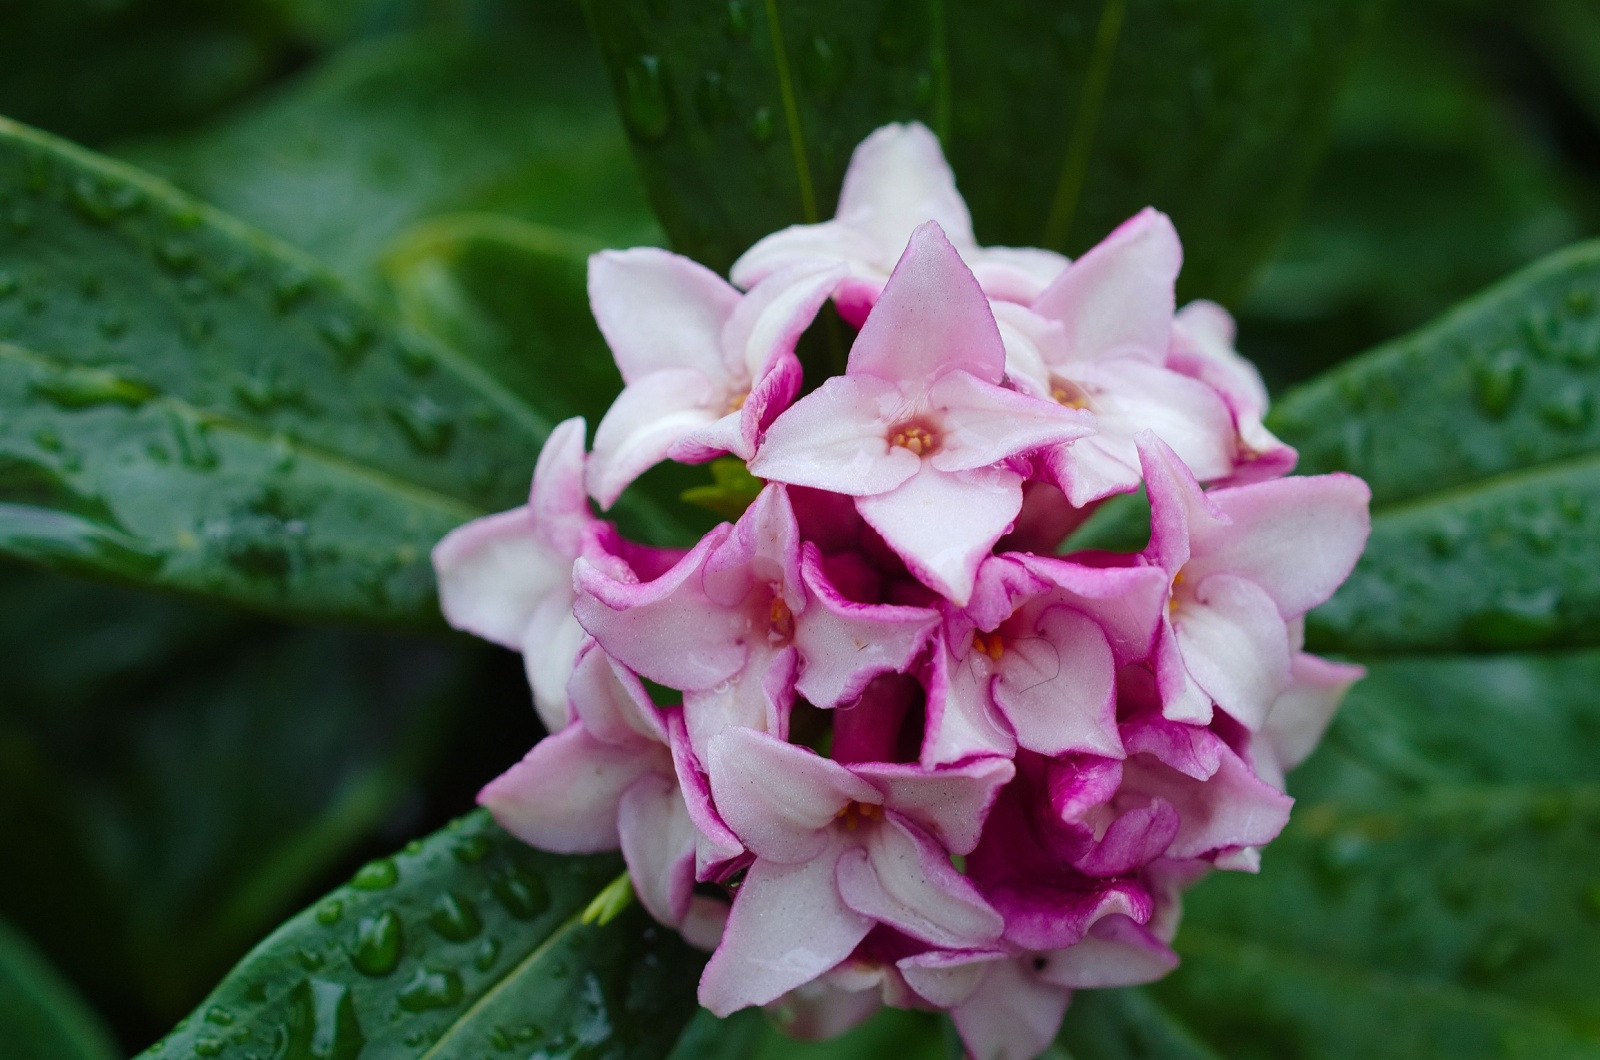 Daphne odora in full bloom in the rain